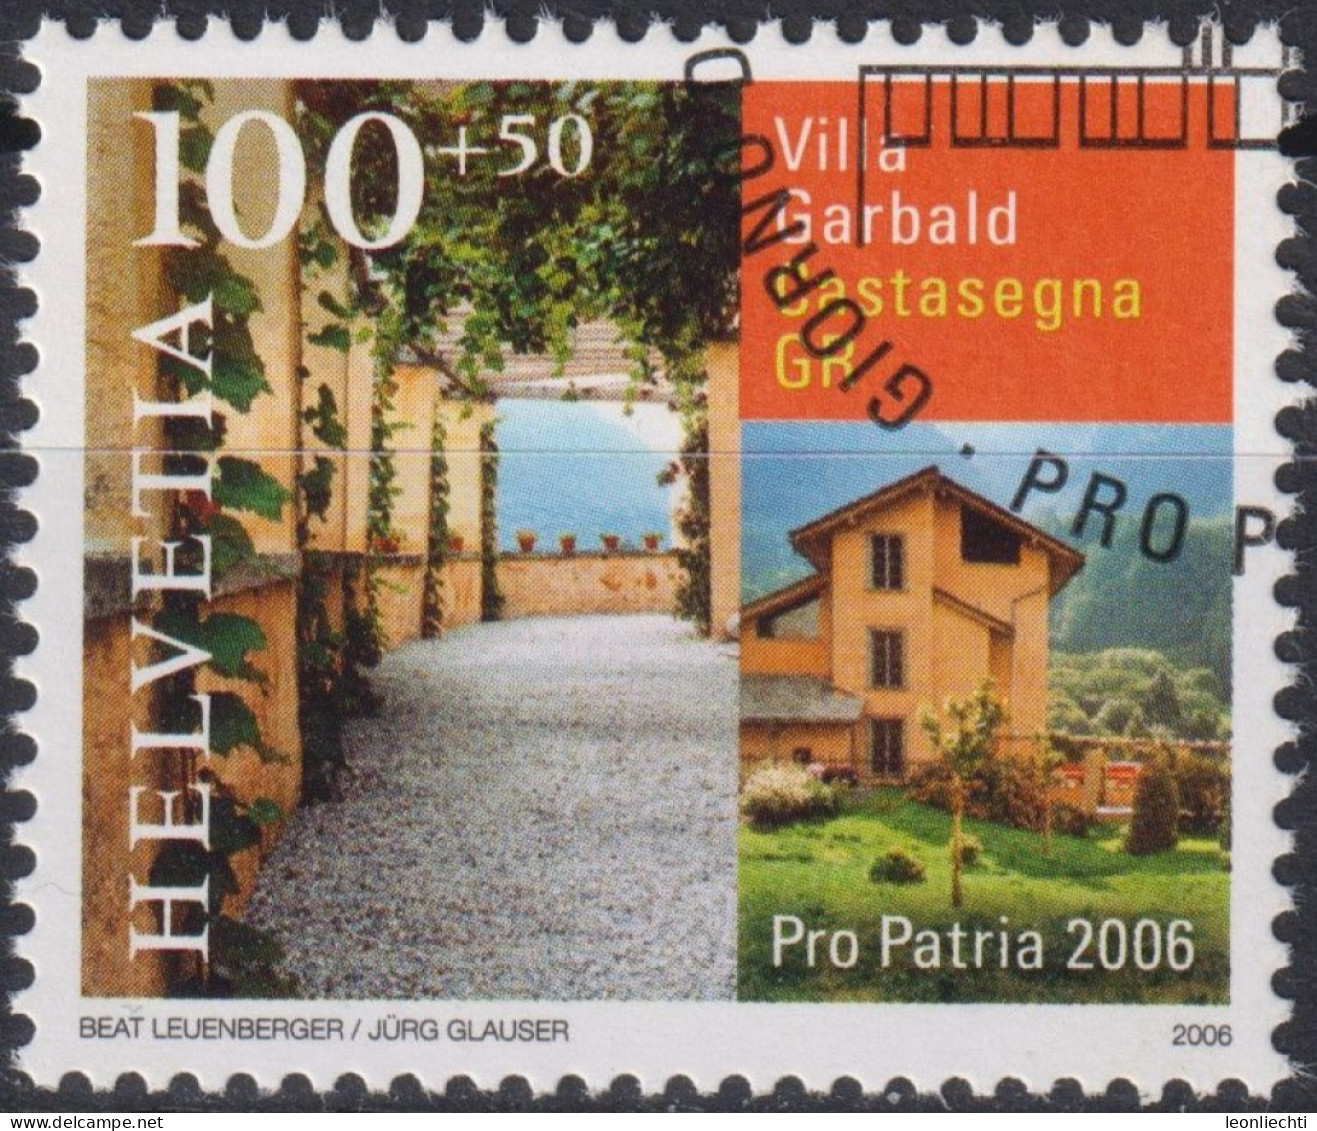 2006 Schweiz Pro Patria, Villa Garbald, Castasegna GR ⵙ Zum:CH B294, Mi:CH 1963, Yt:CH 1890 - Gebruikt